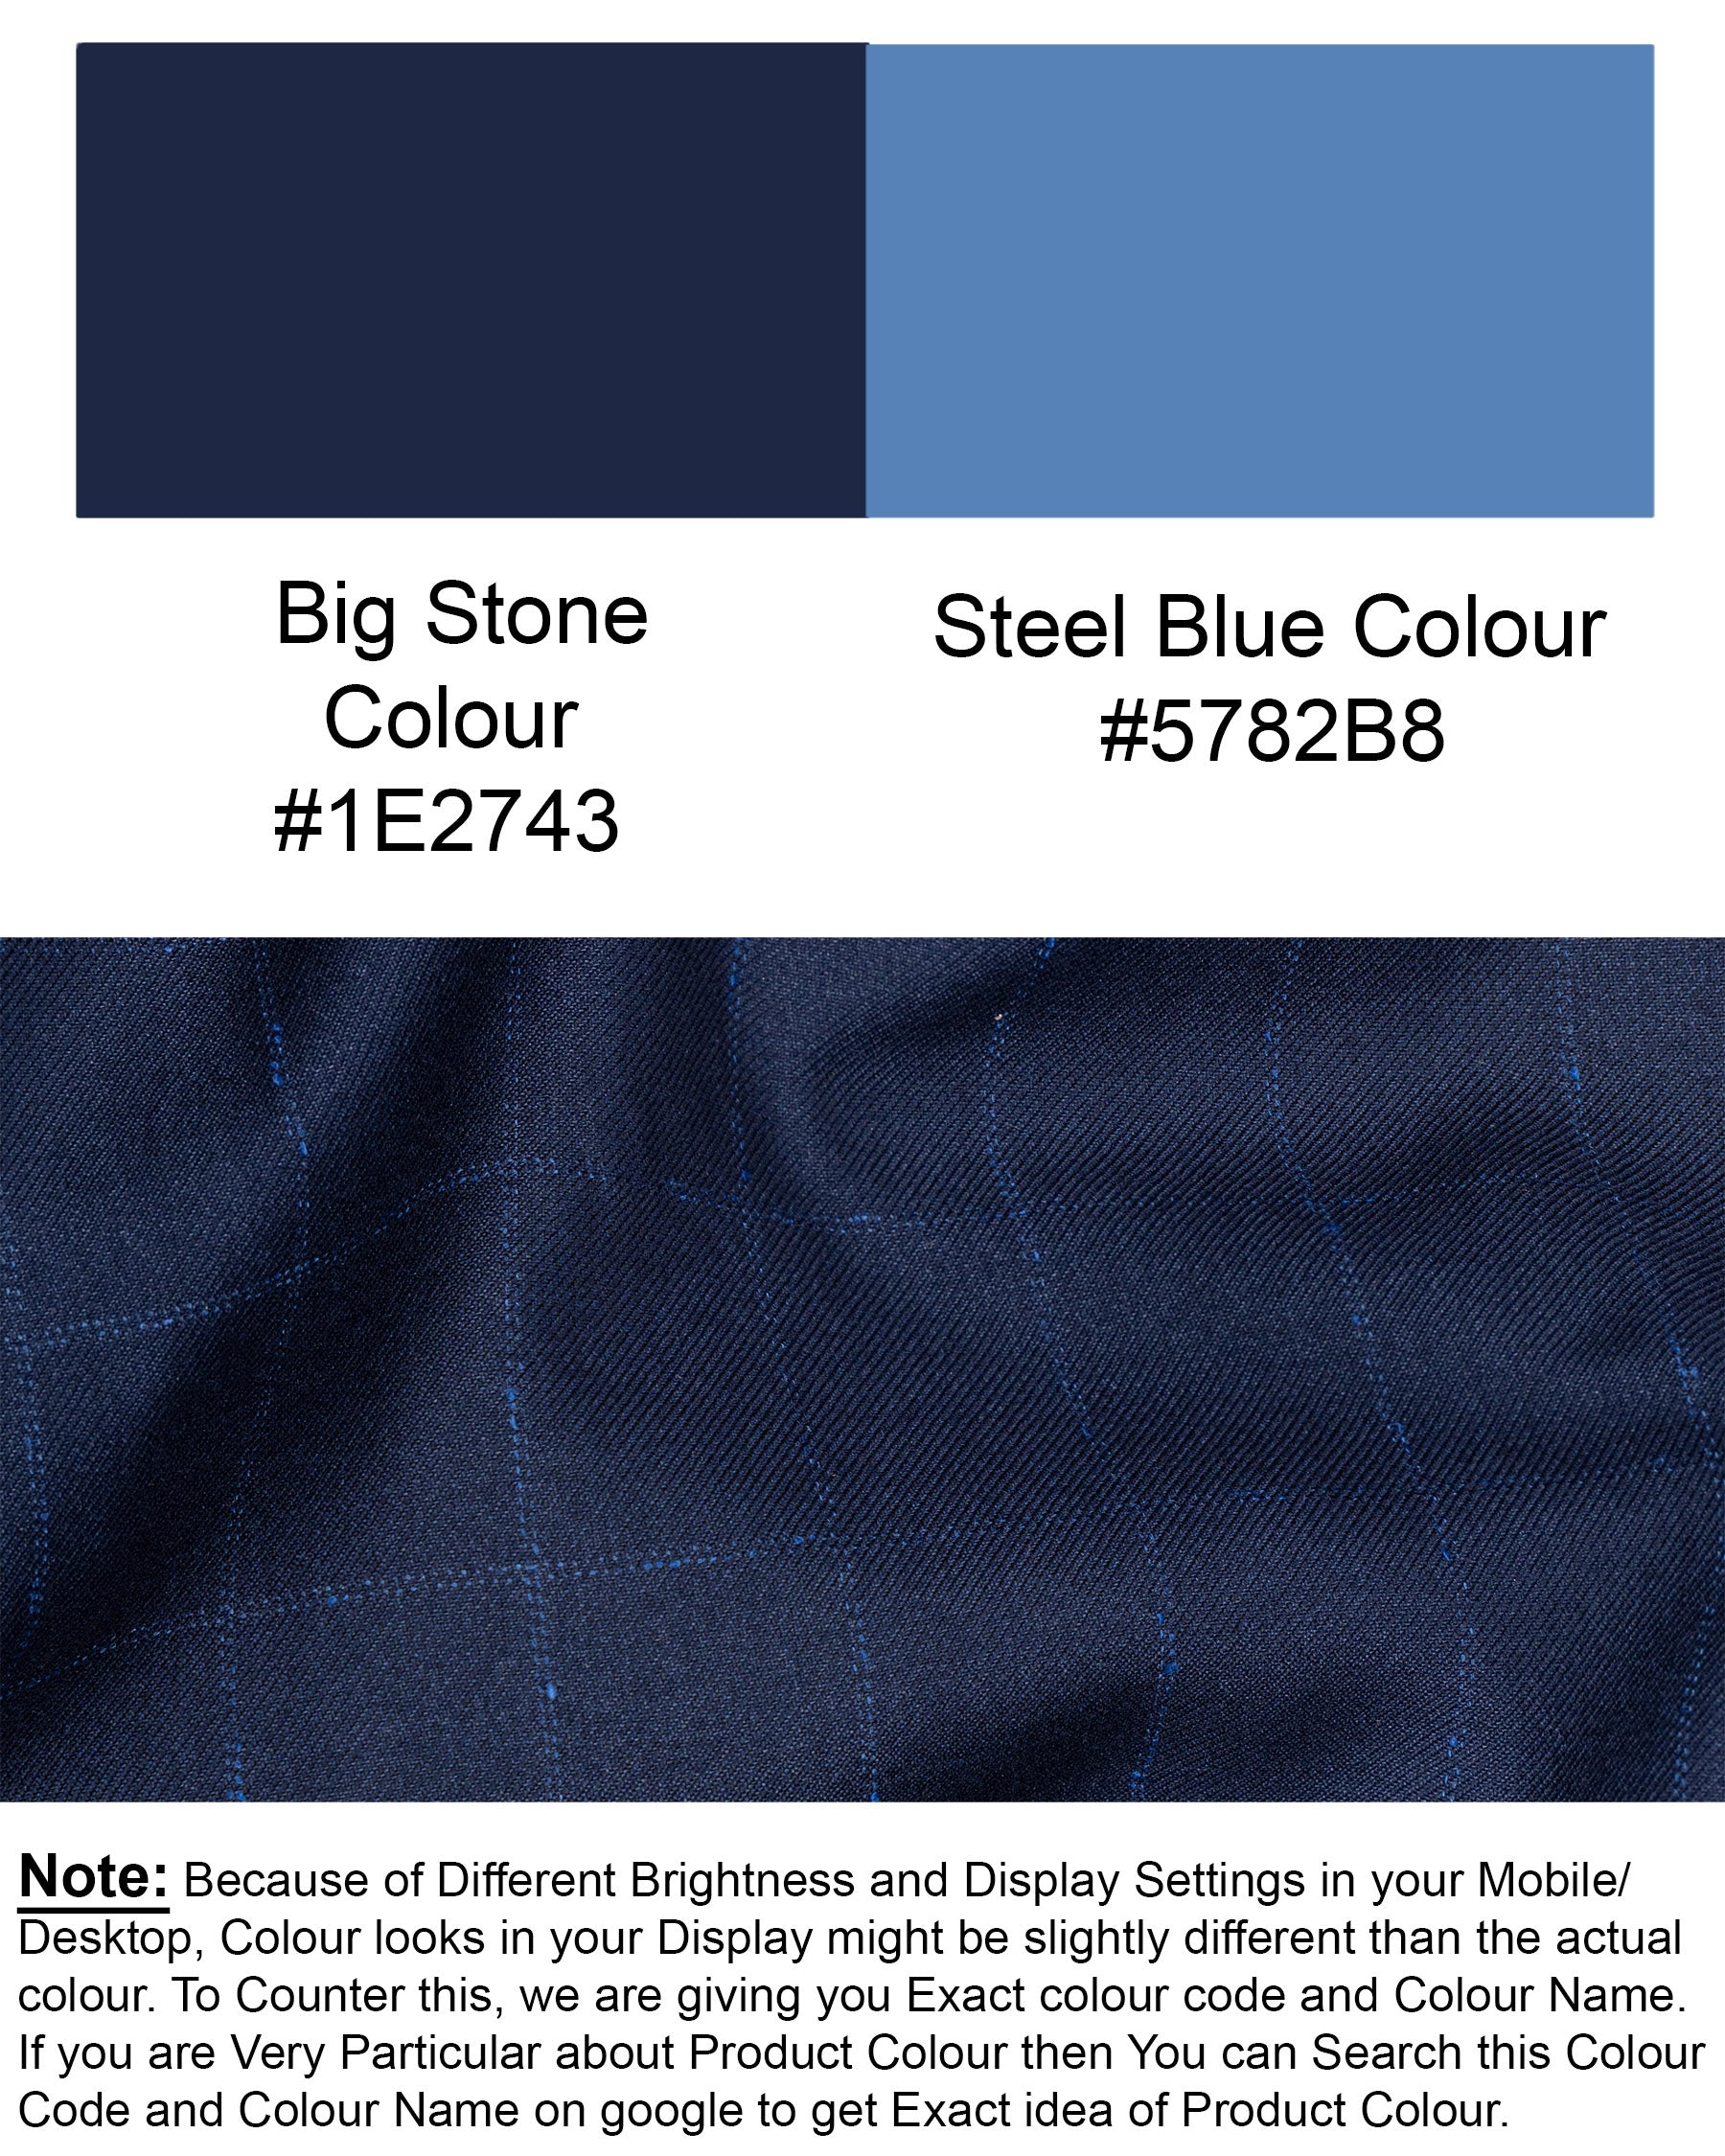 Big Stone Blue Super fine Subtle Checkered Wool Rich BlazerBL1606-SB-36, BL1606-SB-38, BL1606-SB-40, BL1606-SB-42, BL1606-SB-44, BL1606-SB-46, BL1606-SB-48, BL1606-SB-50, BL1606-SB-52, BL1606-SB-54, BL1606-SB-56, BL1606-SB-58, BL1606-SB-60